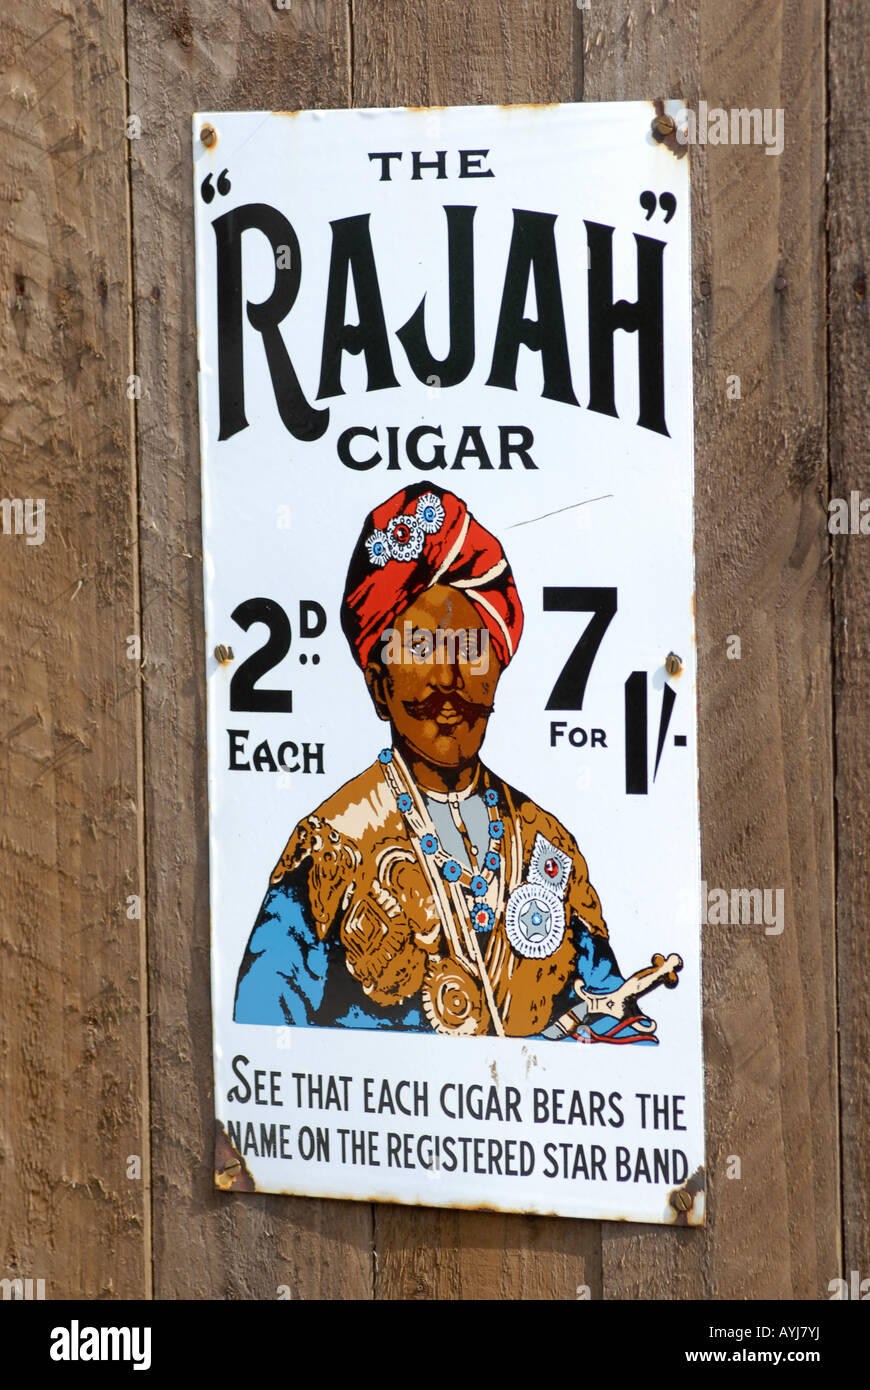 Blists Hill cittadina vittoriana in Telford Shropshire smalto pubblicità segno per il Rajah di sigari Foto Stock